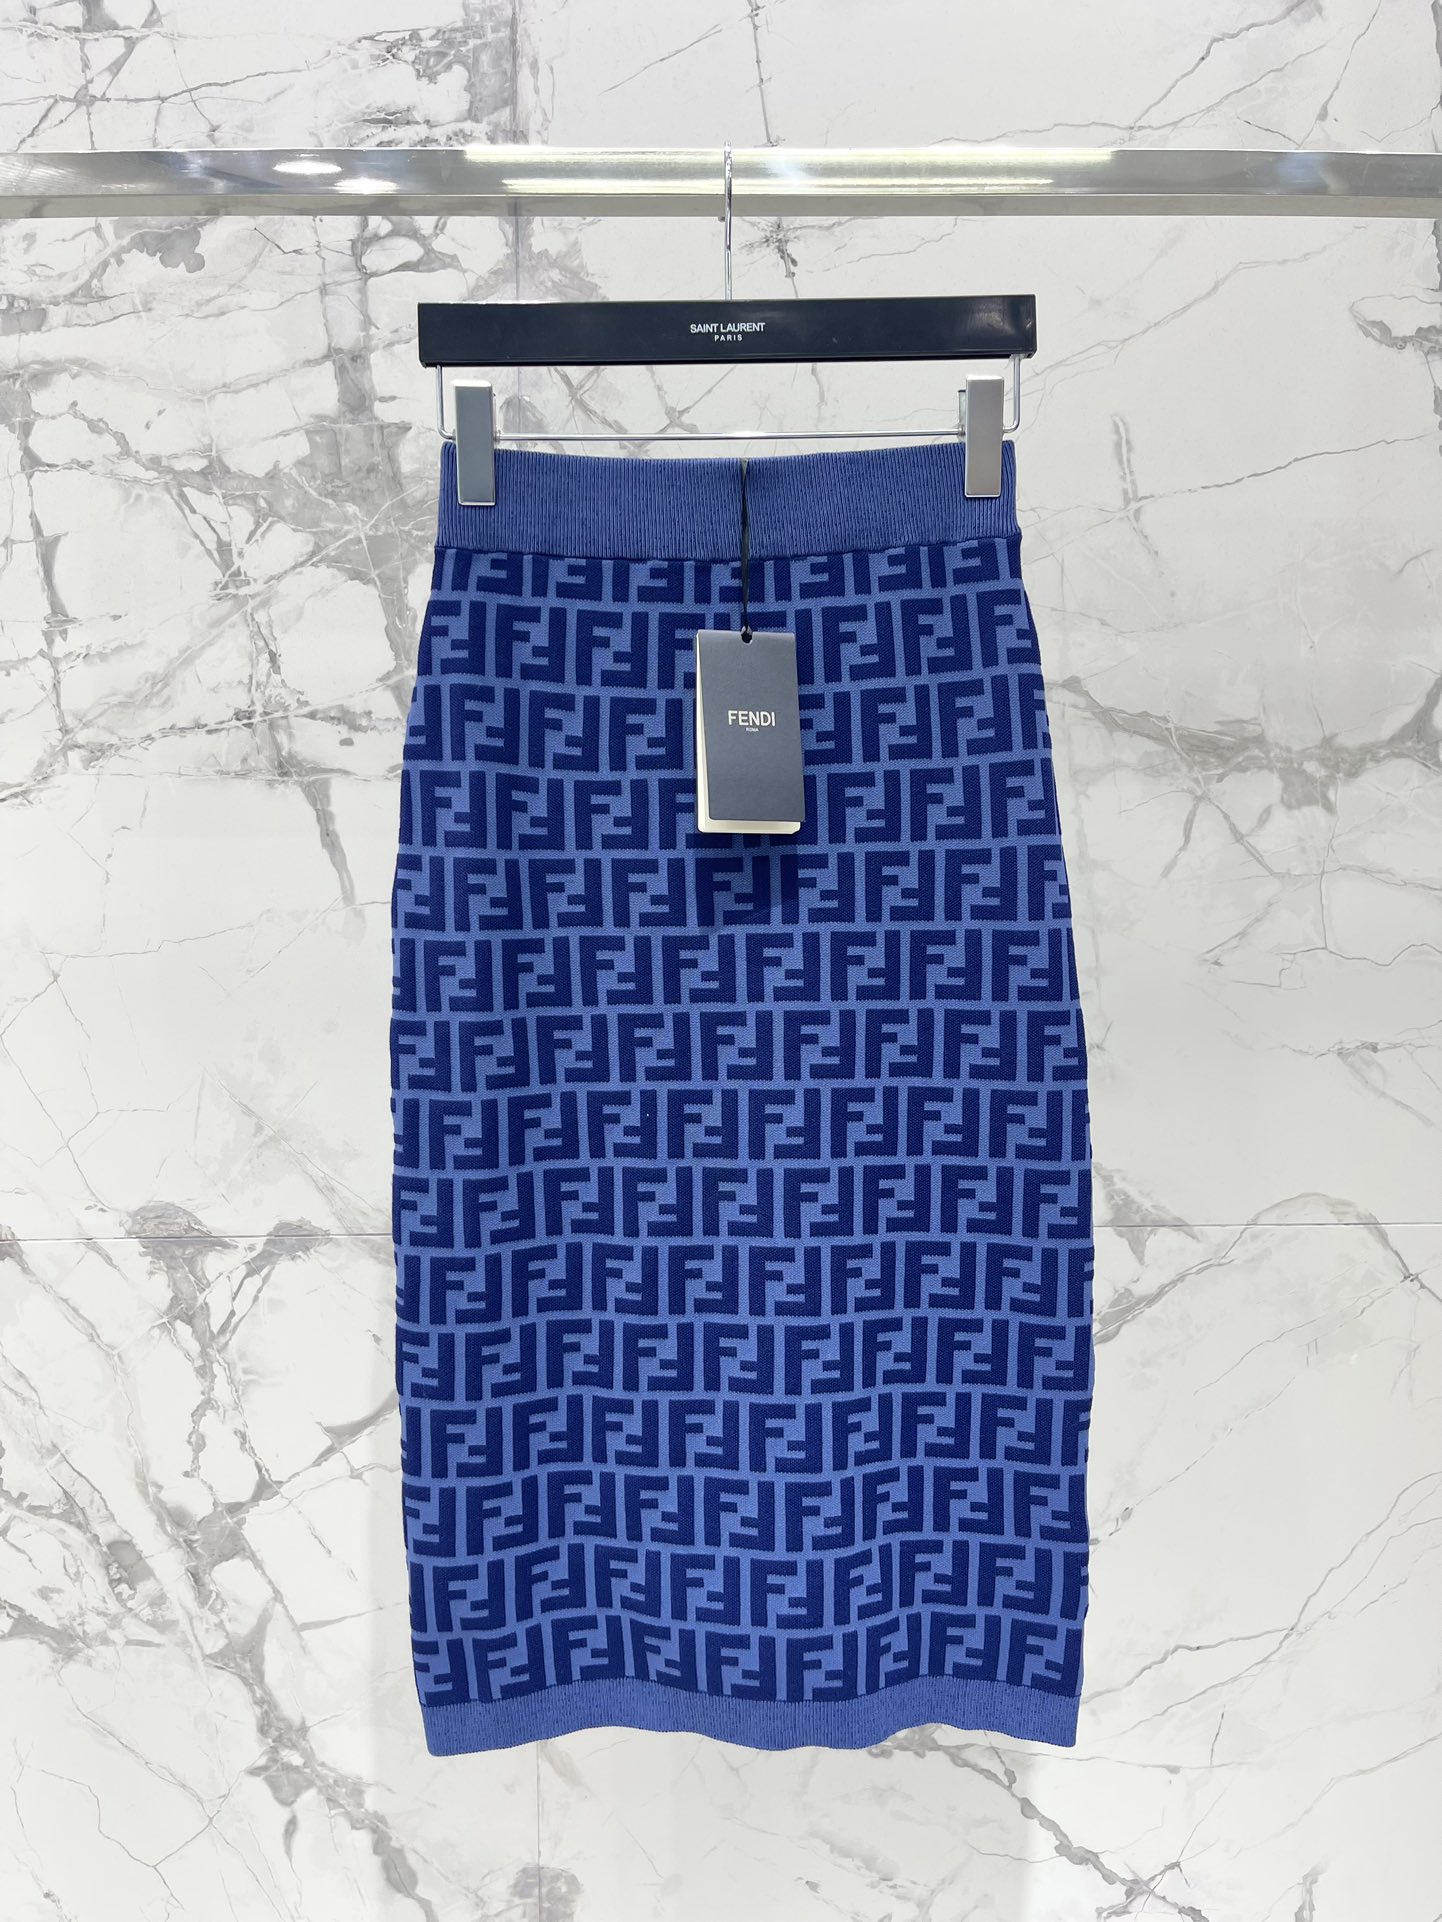 Di alta qualità online
 Fendi Abbigliamento Abiti da Donna Pantaloni Corti Gonne T-Shirt Canotta Blu Lavorazione a maglia Maniche corte